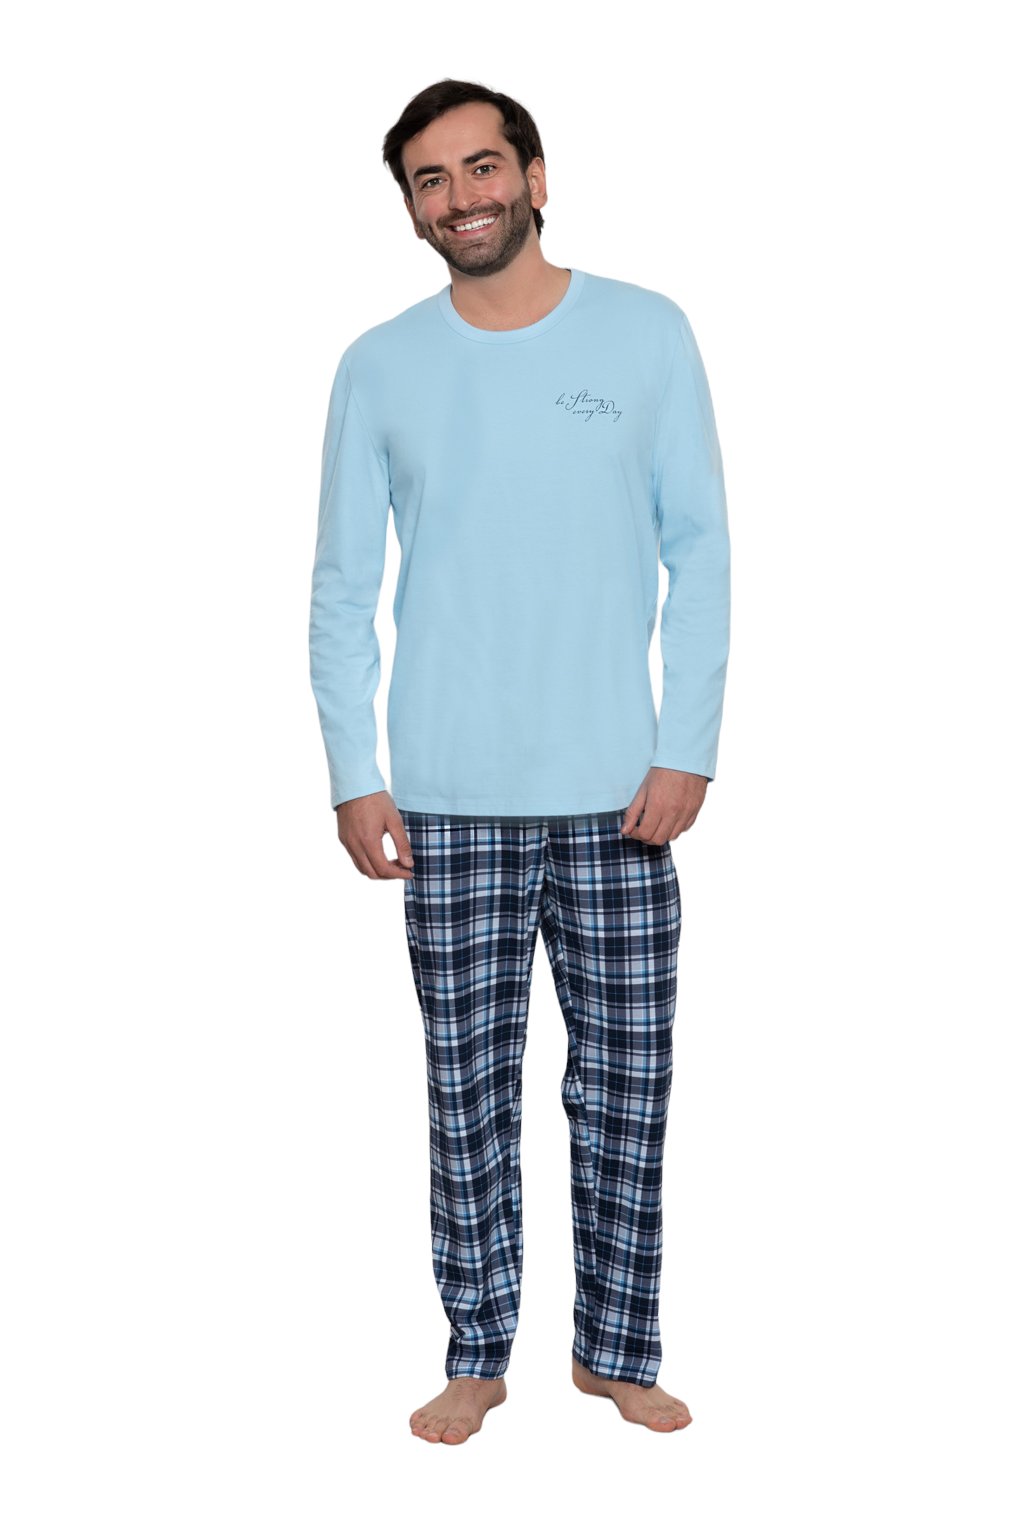 Pánské pyžamo s dlouhým rukávem, 204169 18, modrá